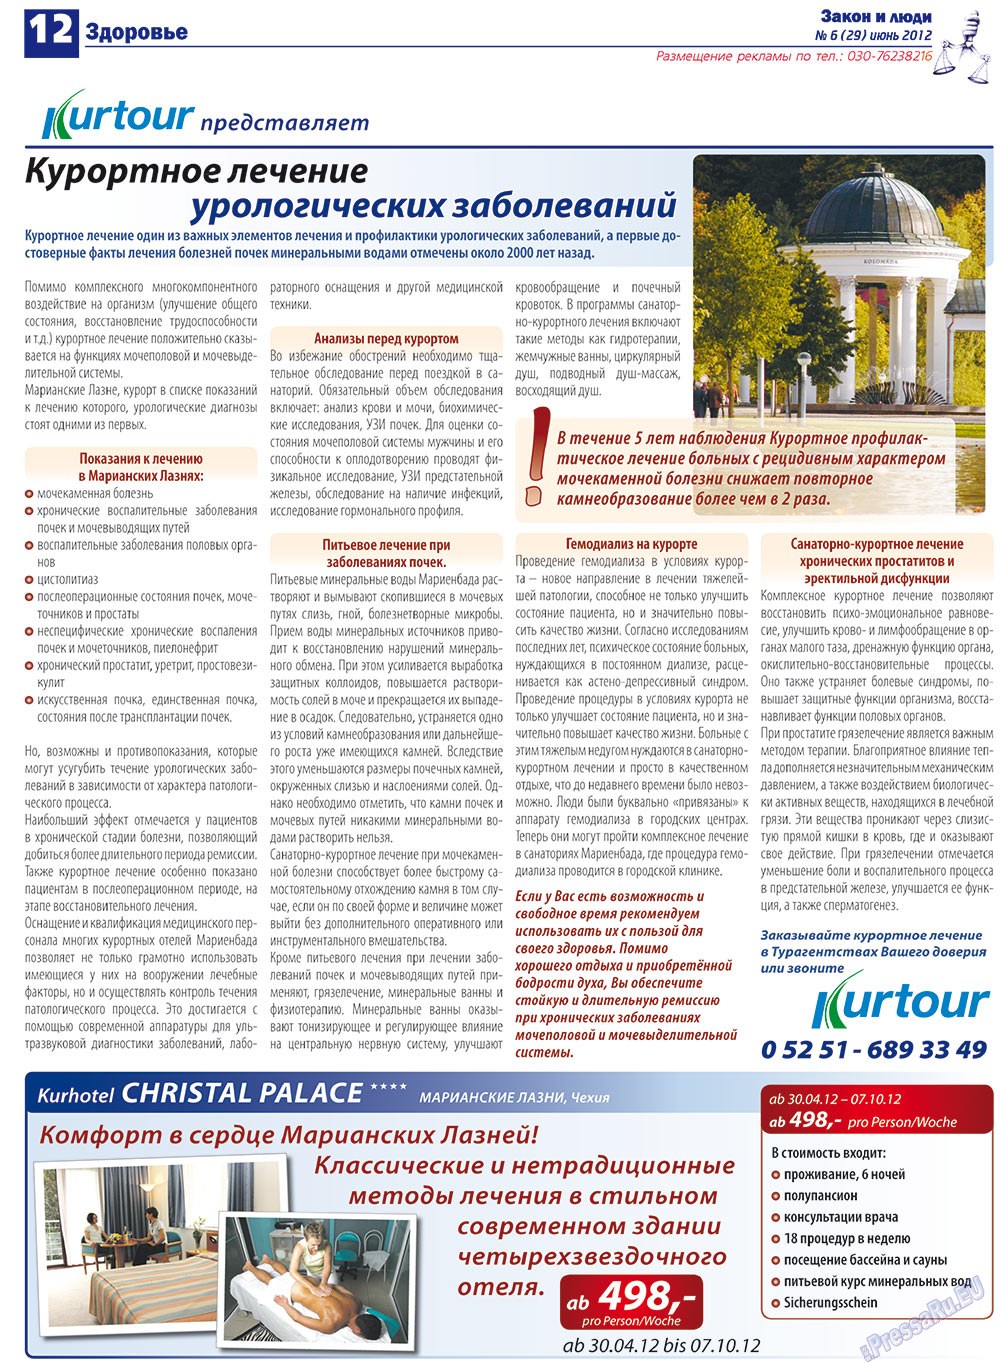 Закон и люди, газета. 2012 №6 стр.12